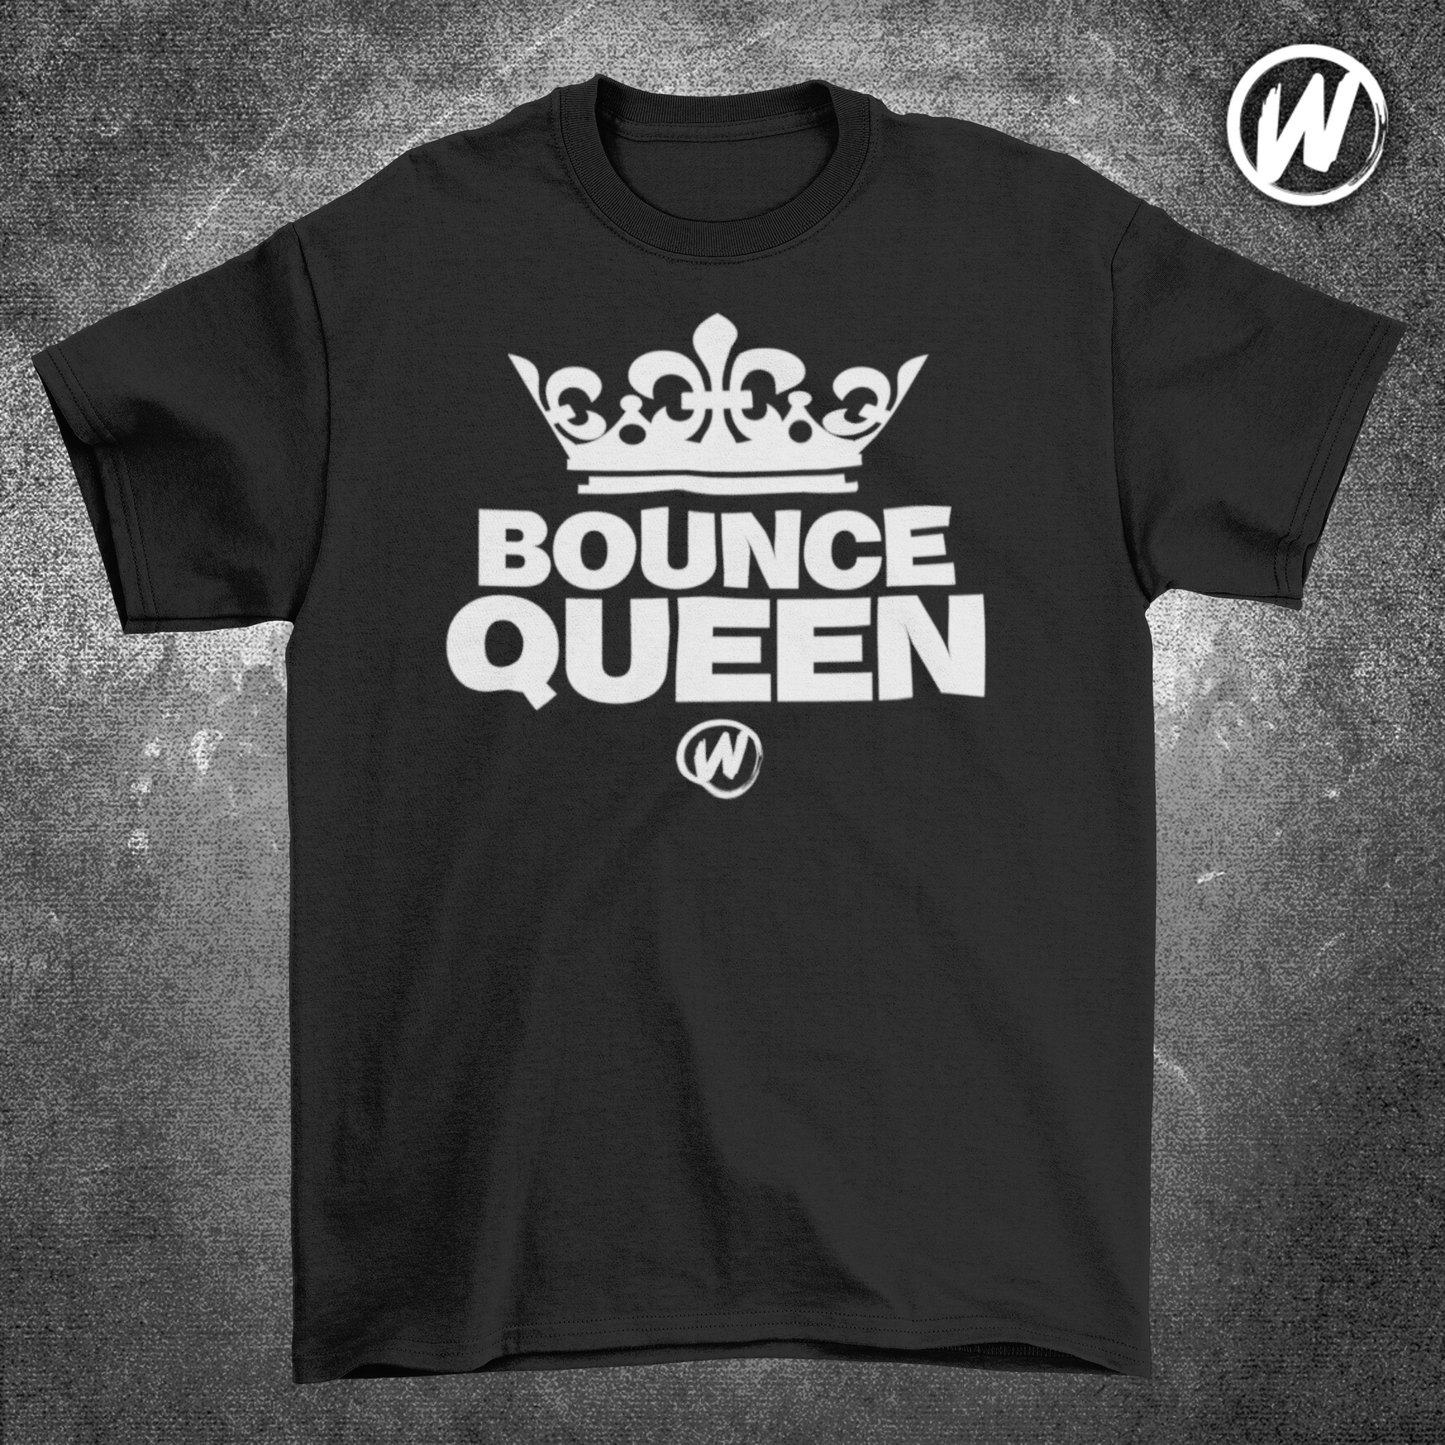 Bounce Queen - Black T-shirt